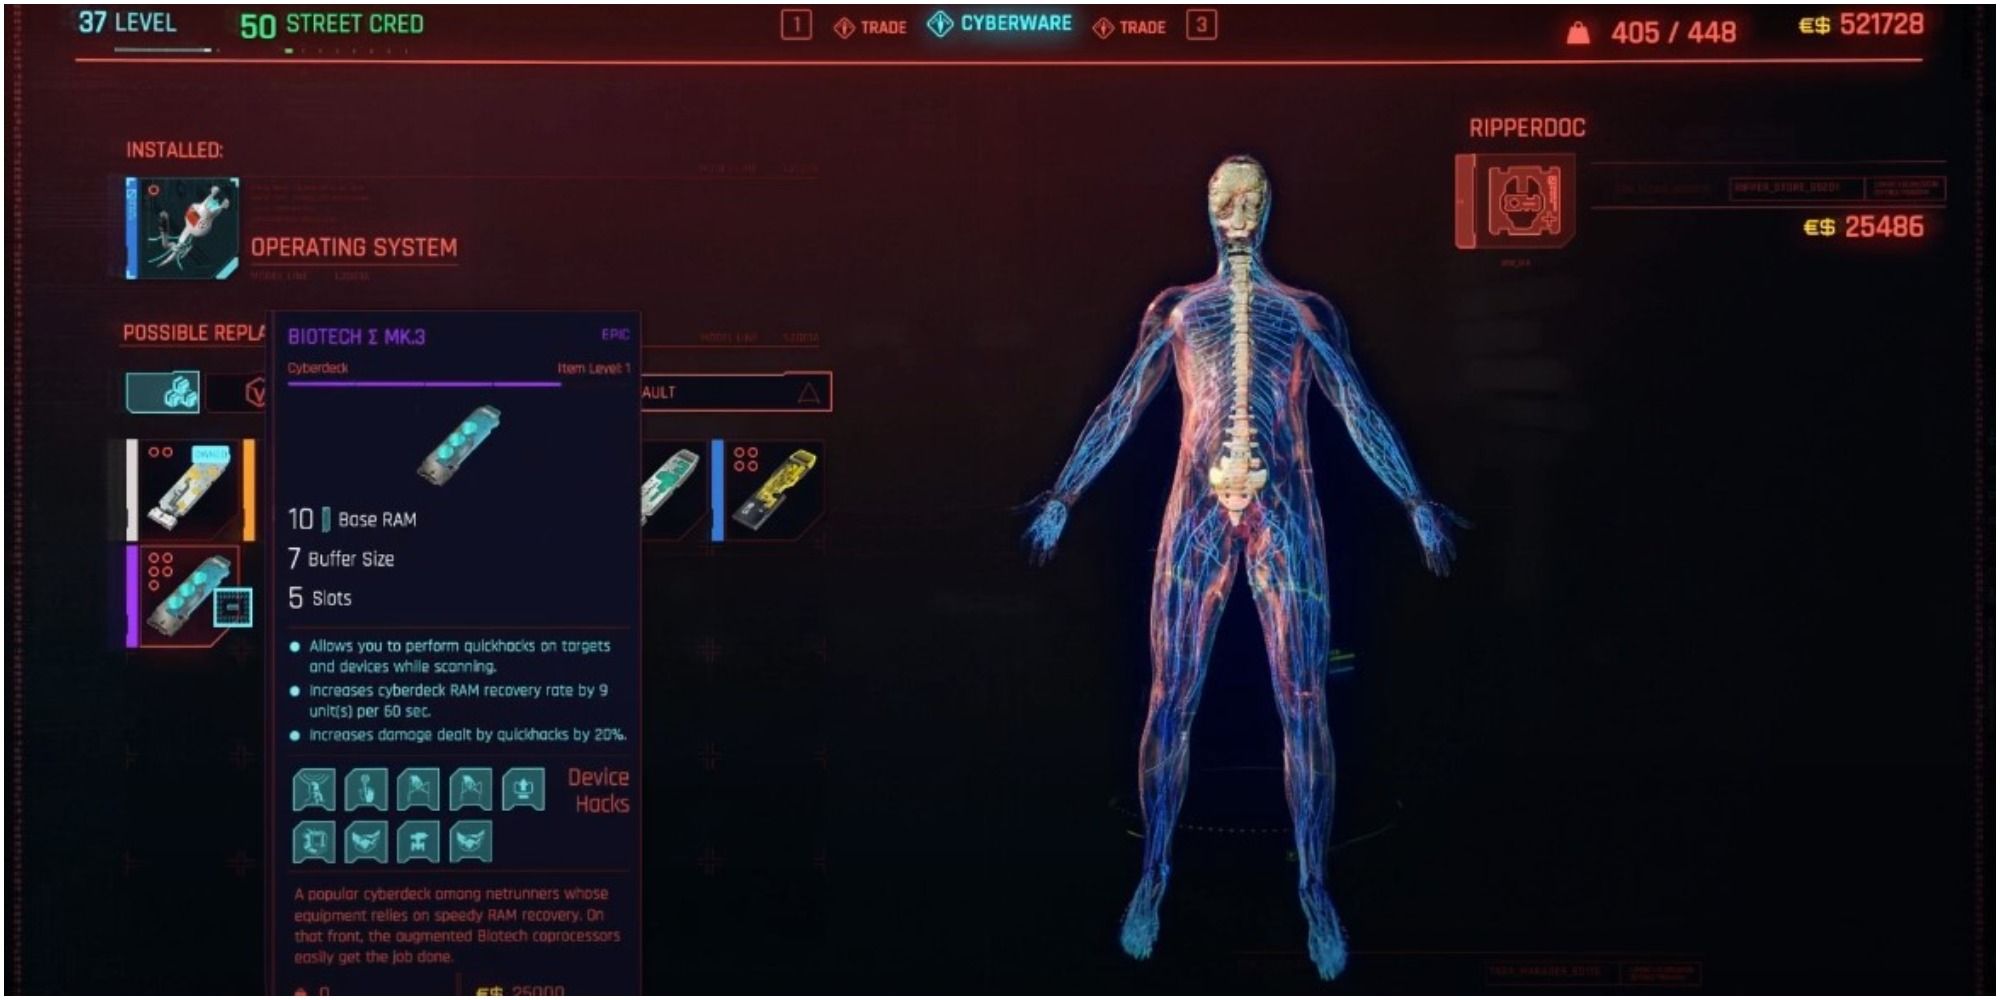 Cyberpunk 2077 Buying An Epic Biotech Mk 3